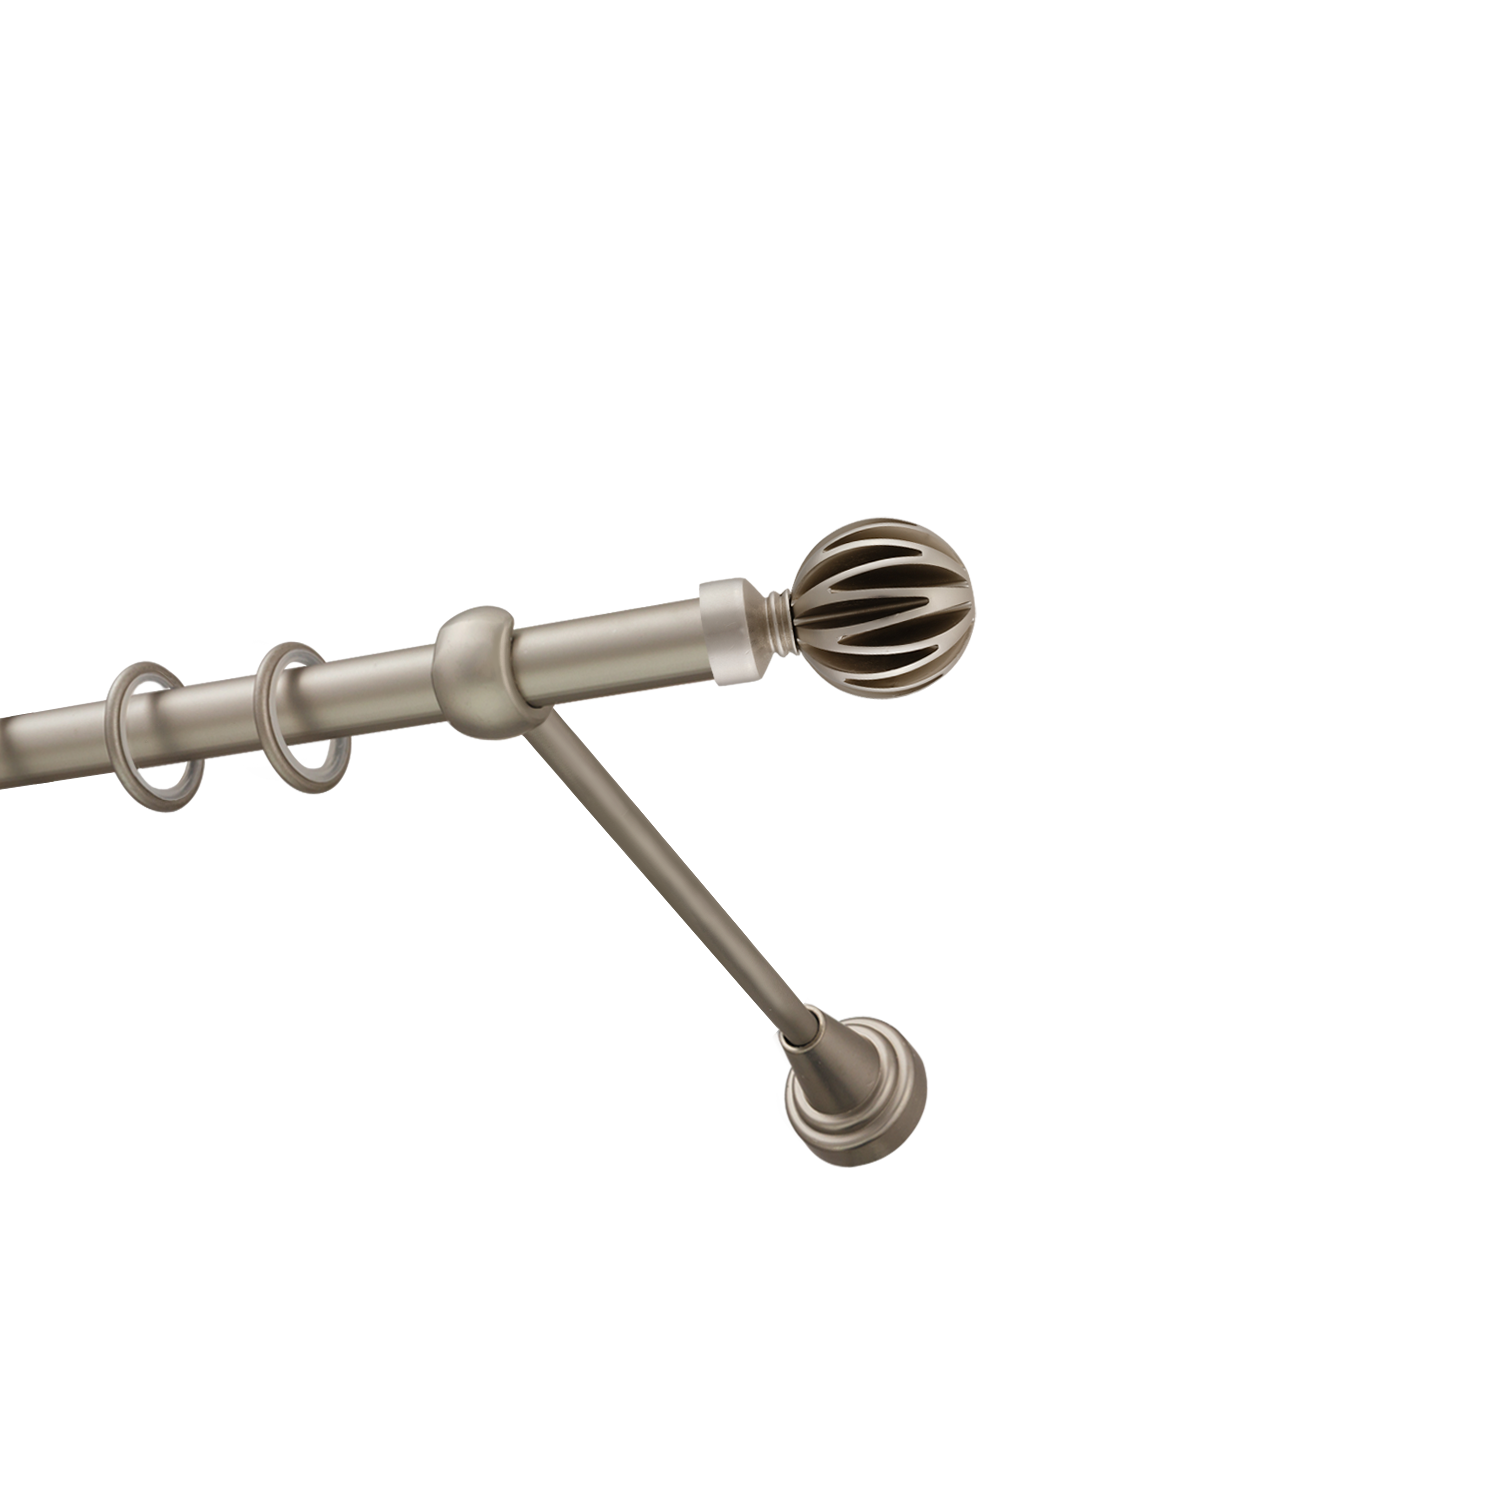 Металлический карниз для штор Шафран, однорядный 16 мм, сталь, гладкая штанга, длина 300 см - фото Wikidecor.ru